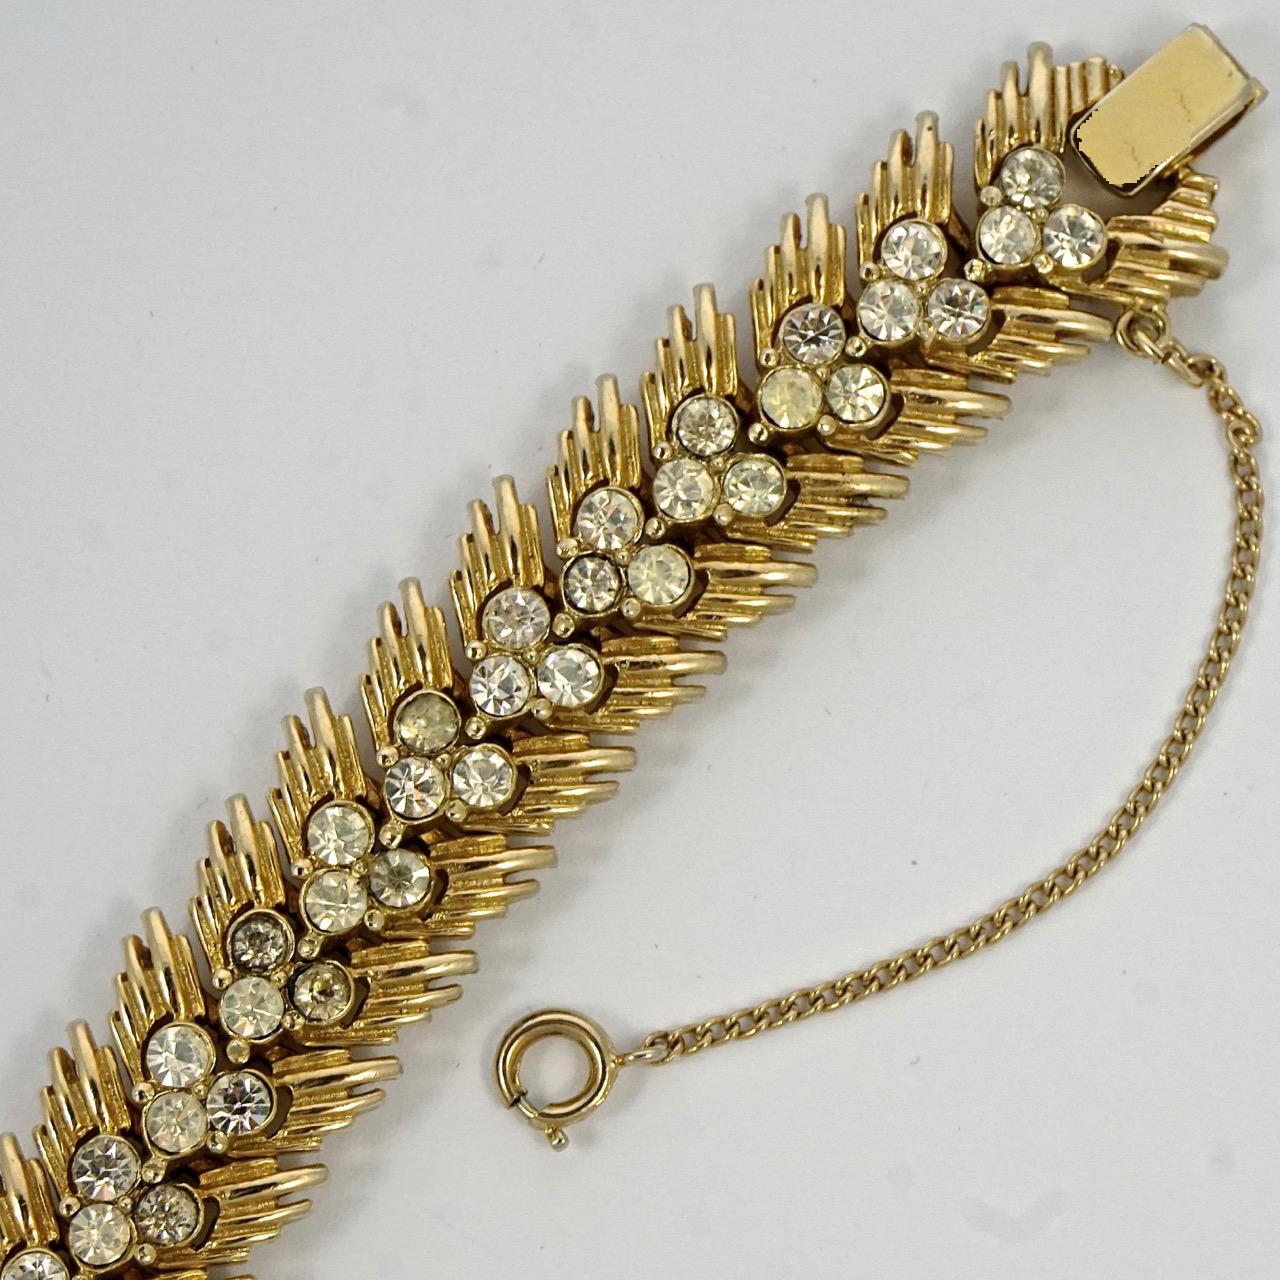 Green Rhinestone Flower Bracelet Vintage Flower Link Bracelet Gold Filled circa 1920s or 1930s Bracelet